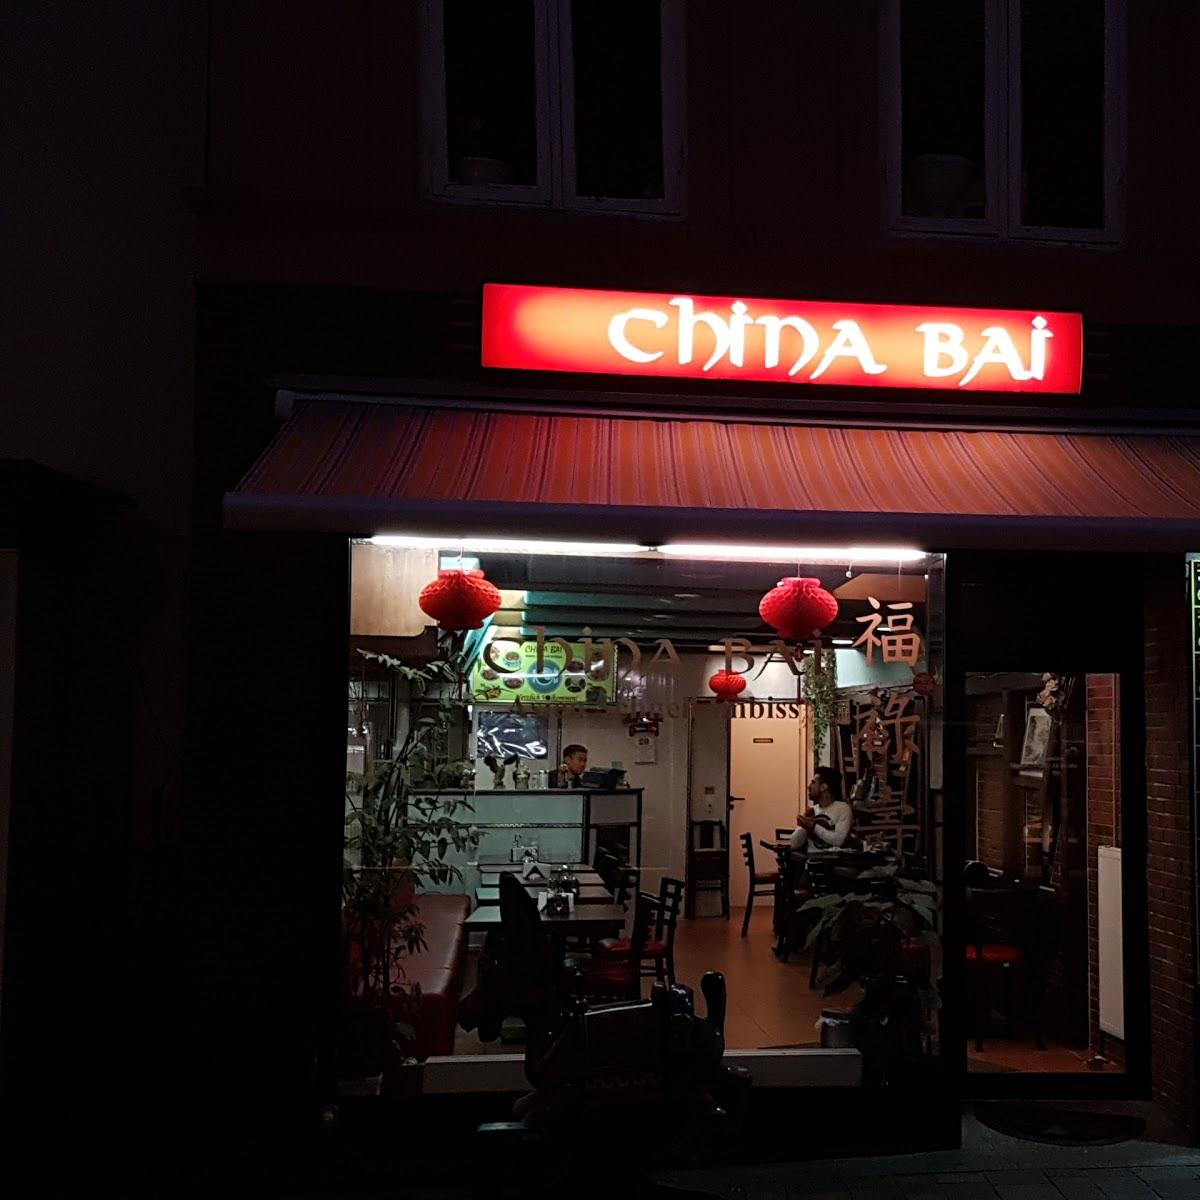 Restaurant "China Imbiss China Bai" in  Flensburg